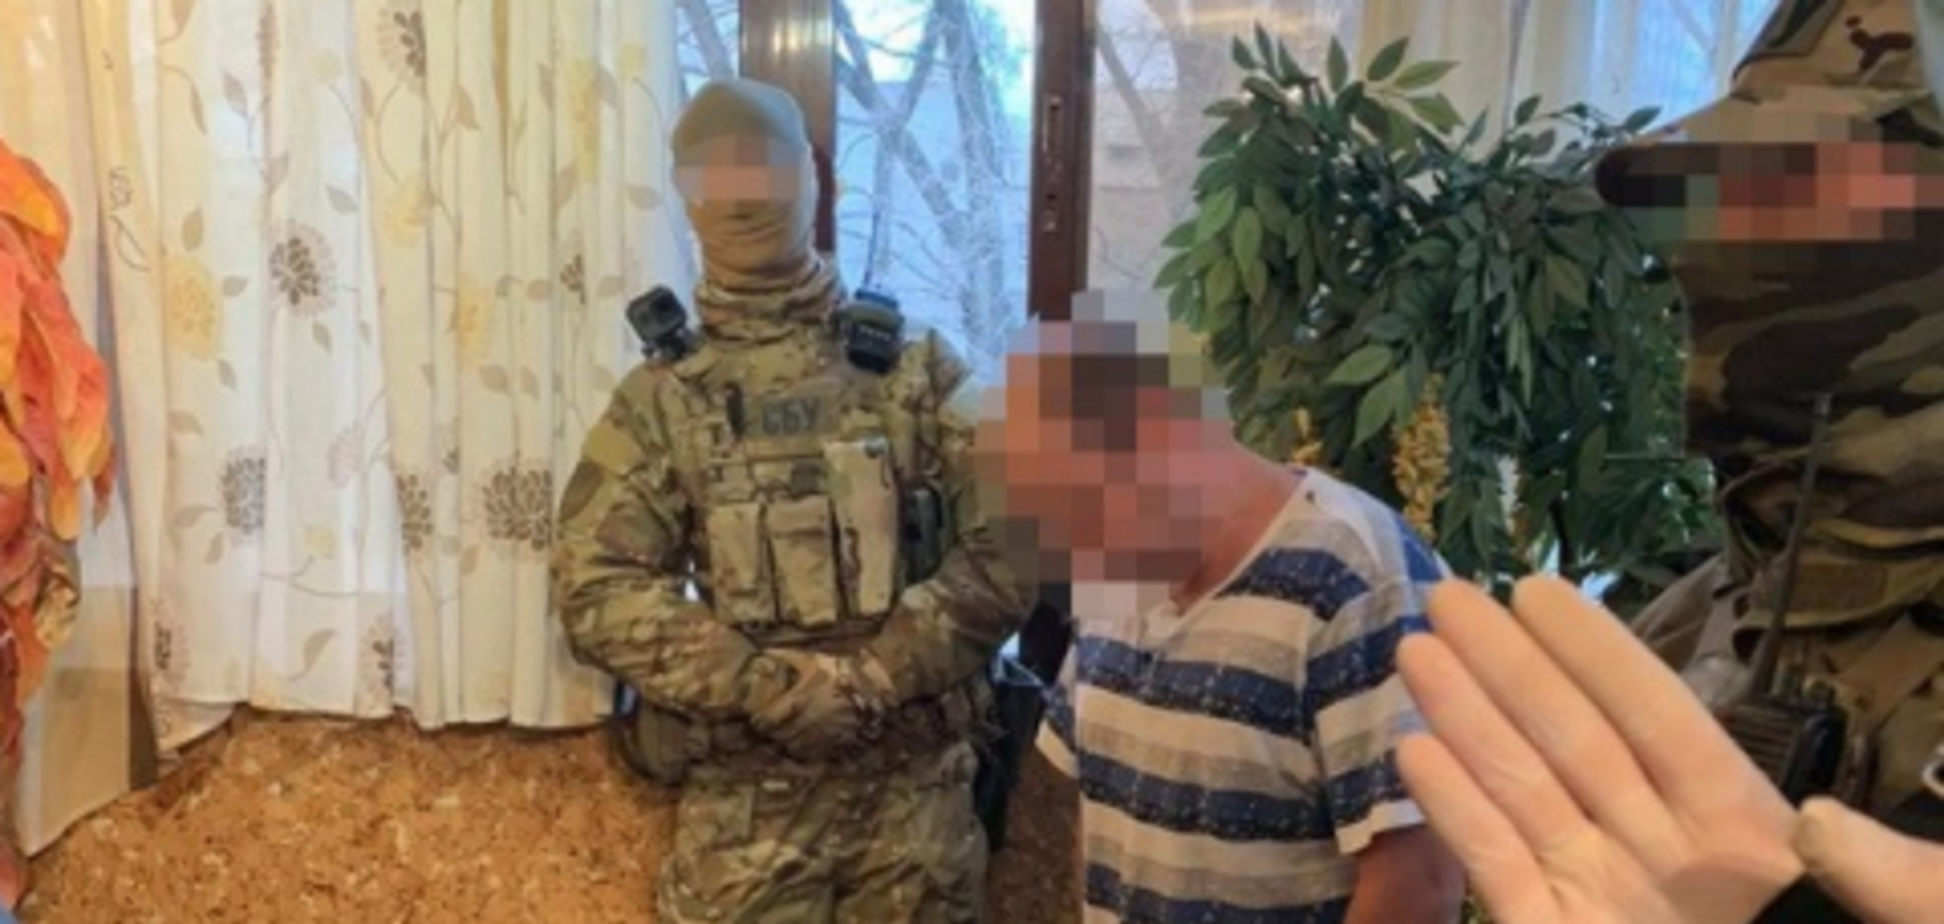 Збували товар по всьому регіону: СБУ затримала під Дніпром групу наркоторговців